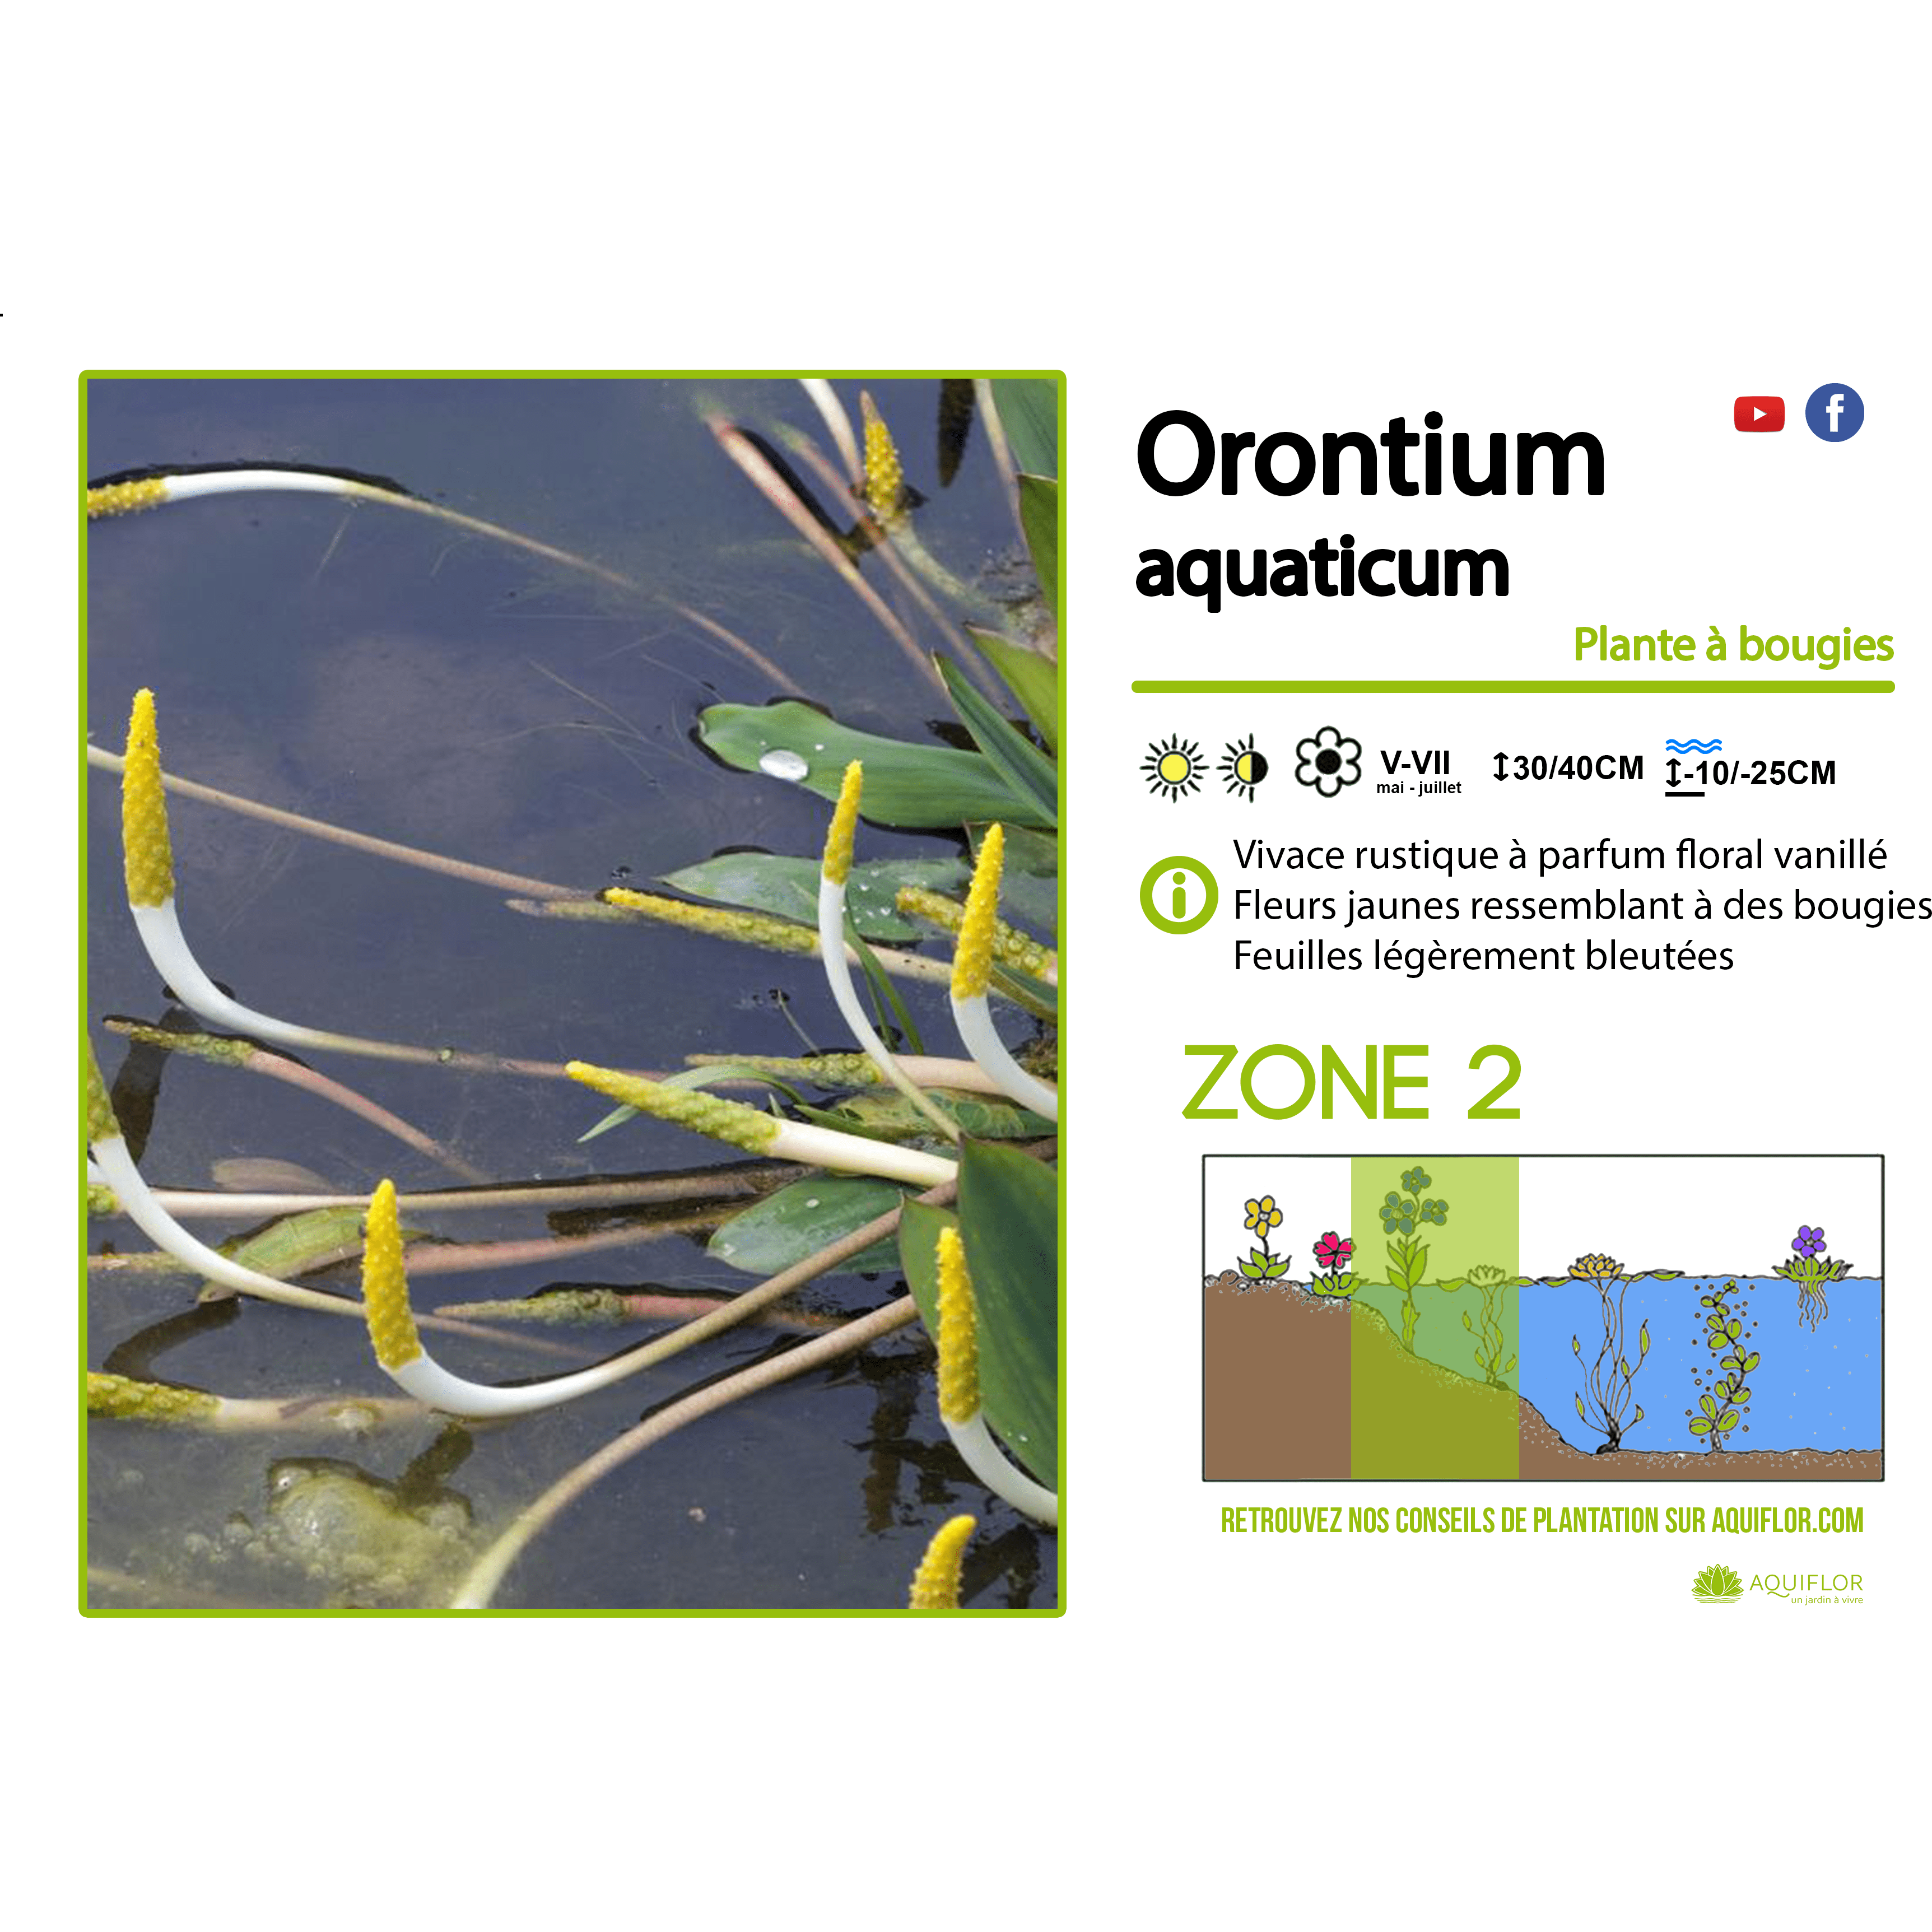 Orontium Aquaticum - Oronte aquatique (plante à bougies) - Plante